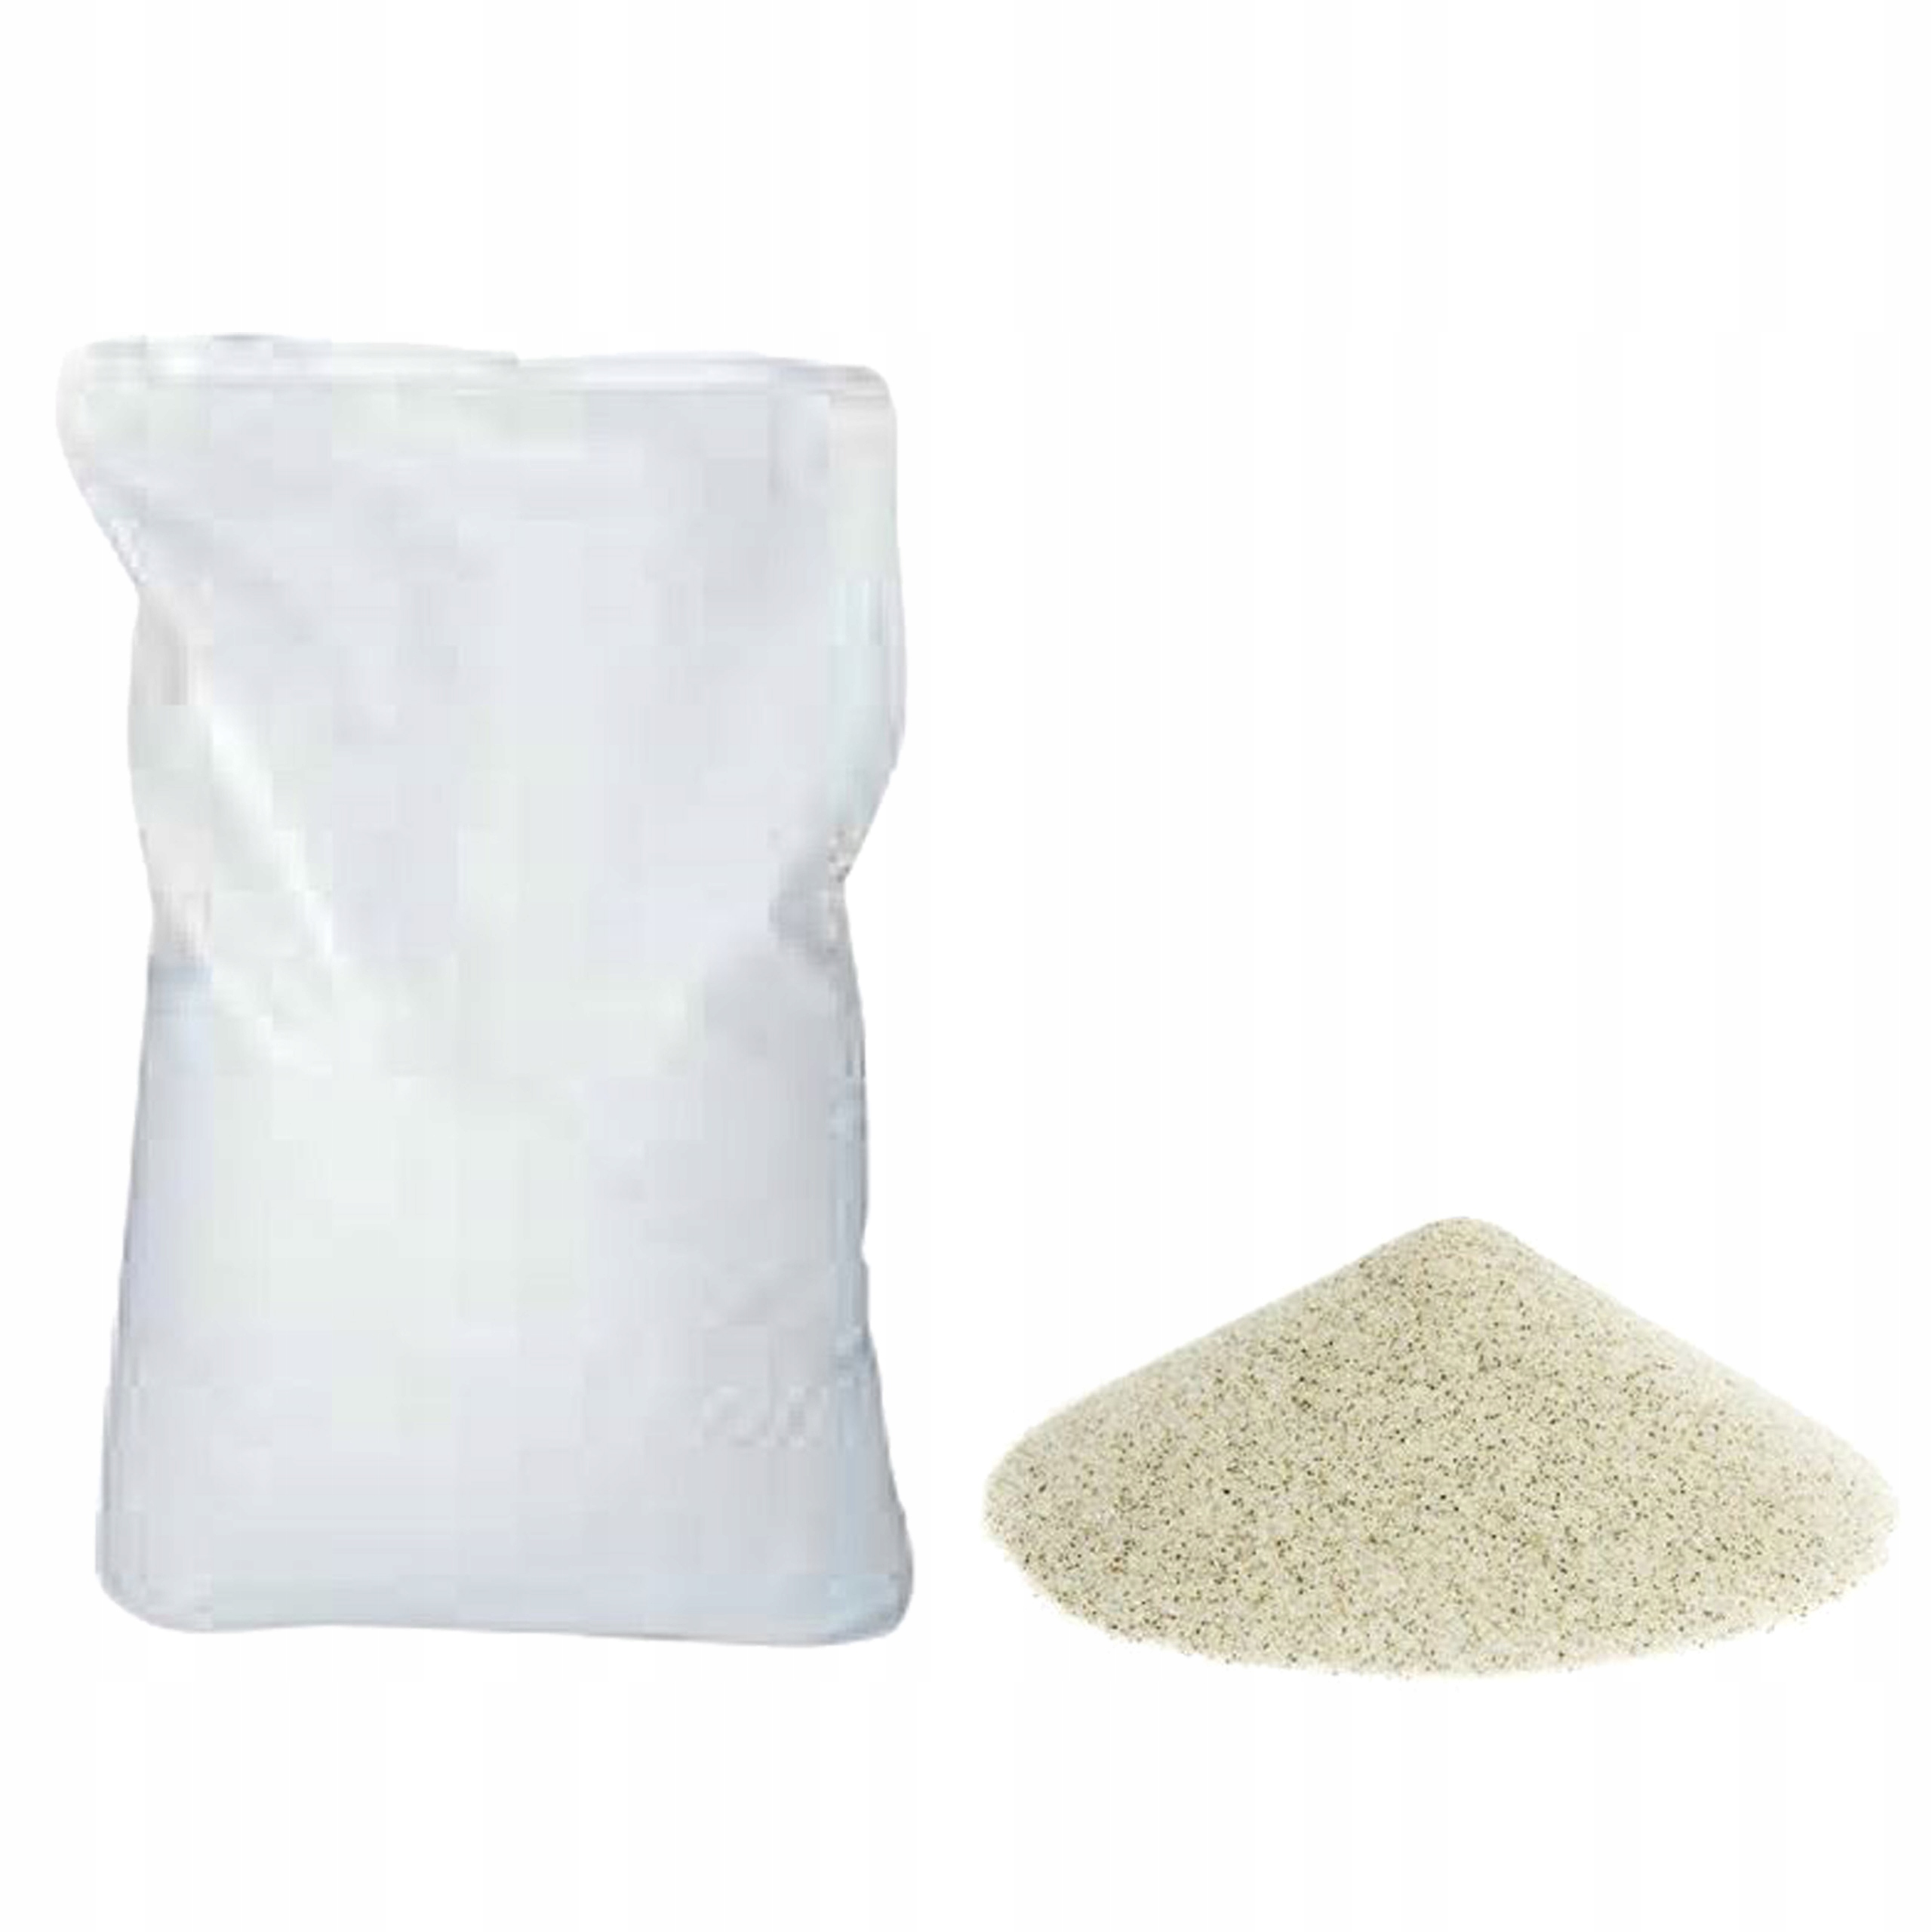 Песок оптом от производителя. Кварцевый песок 25 кг. Кварц песок 0.1-0.3 мм. Песок кварцевый в мешке 25 кг. Песок кварцевый SIKAQUARTZ Sand-08 мешок 25кг.